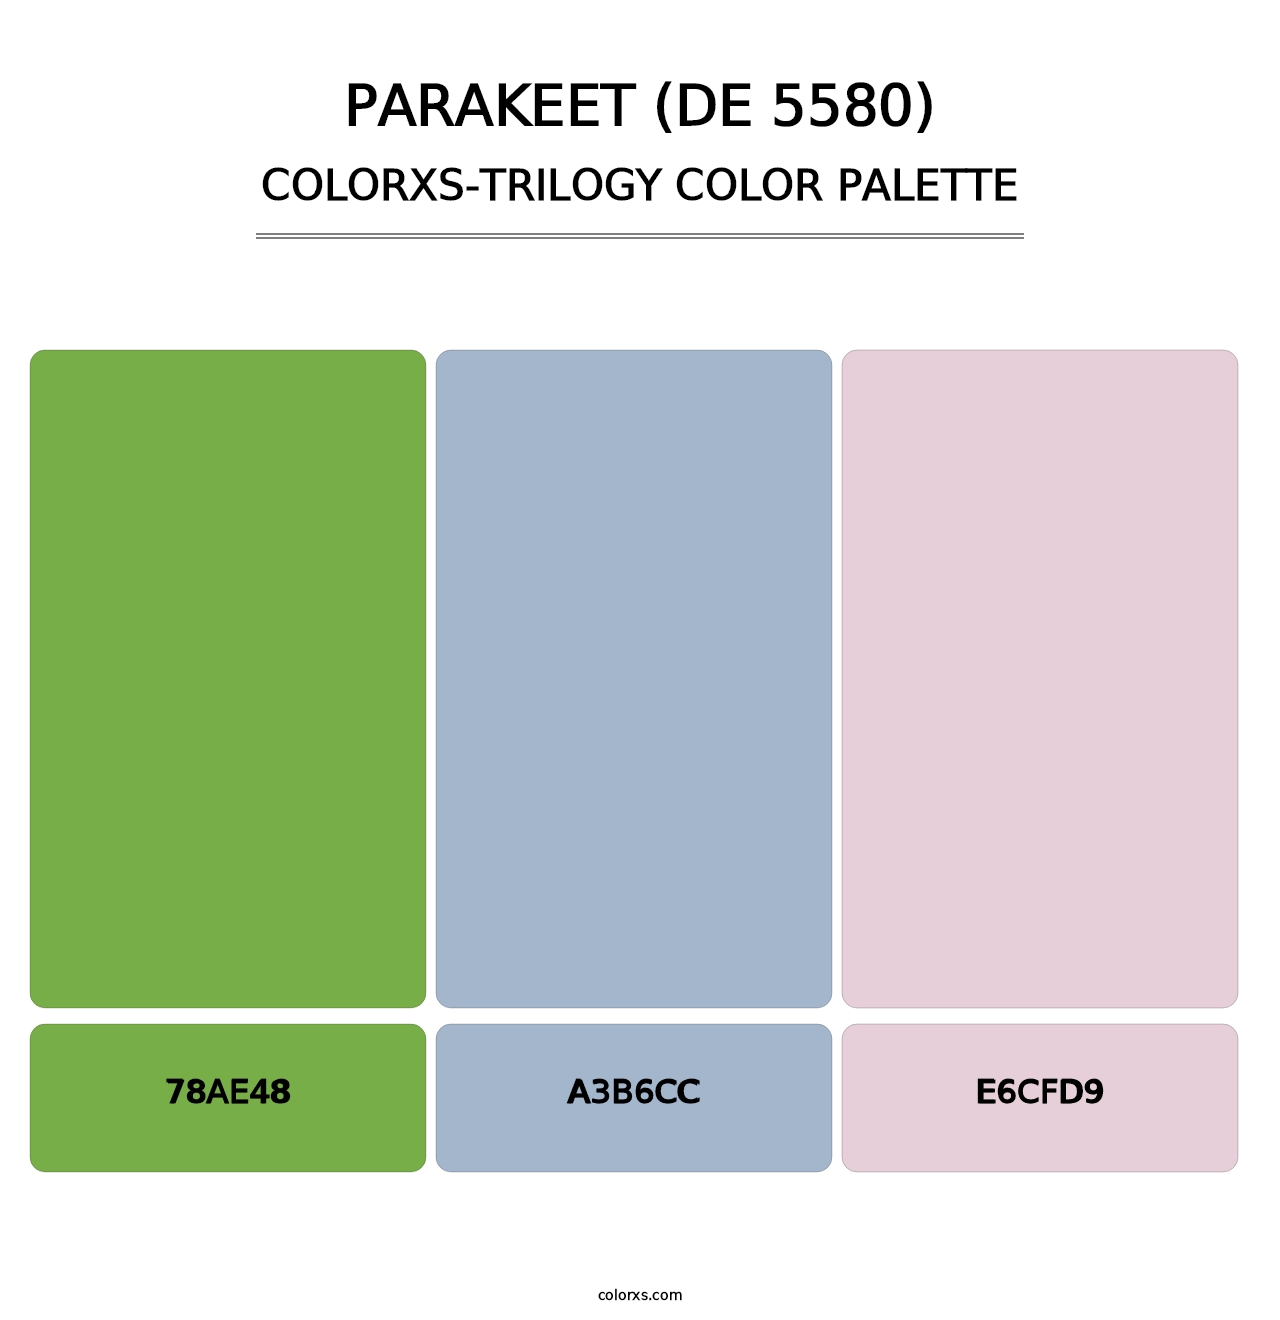 Parakeet (DE 5580) - Colorxs Trilogy Palette